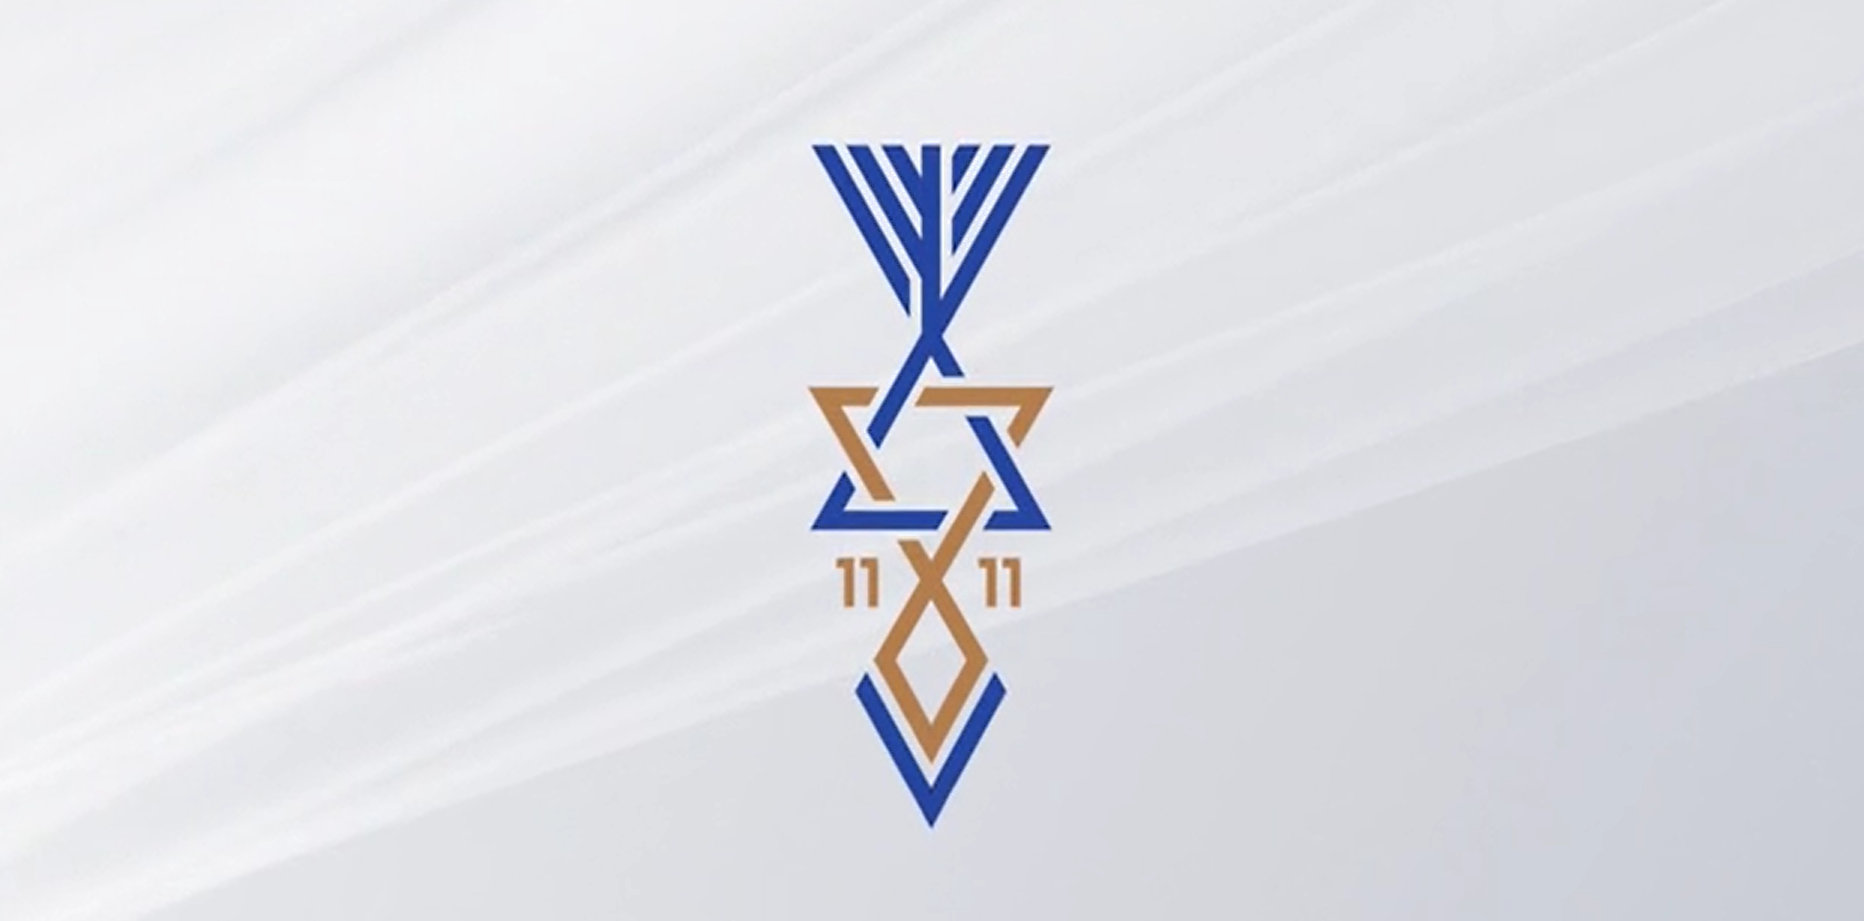 shalom Israel hebrew star gift idea Men's T-Shirt